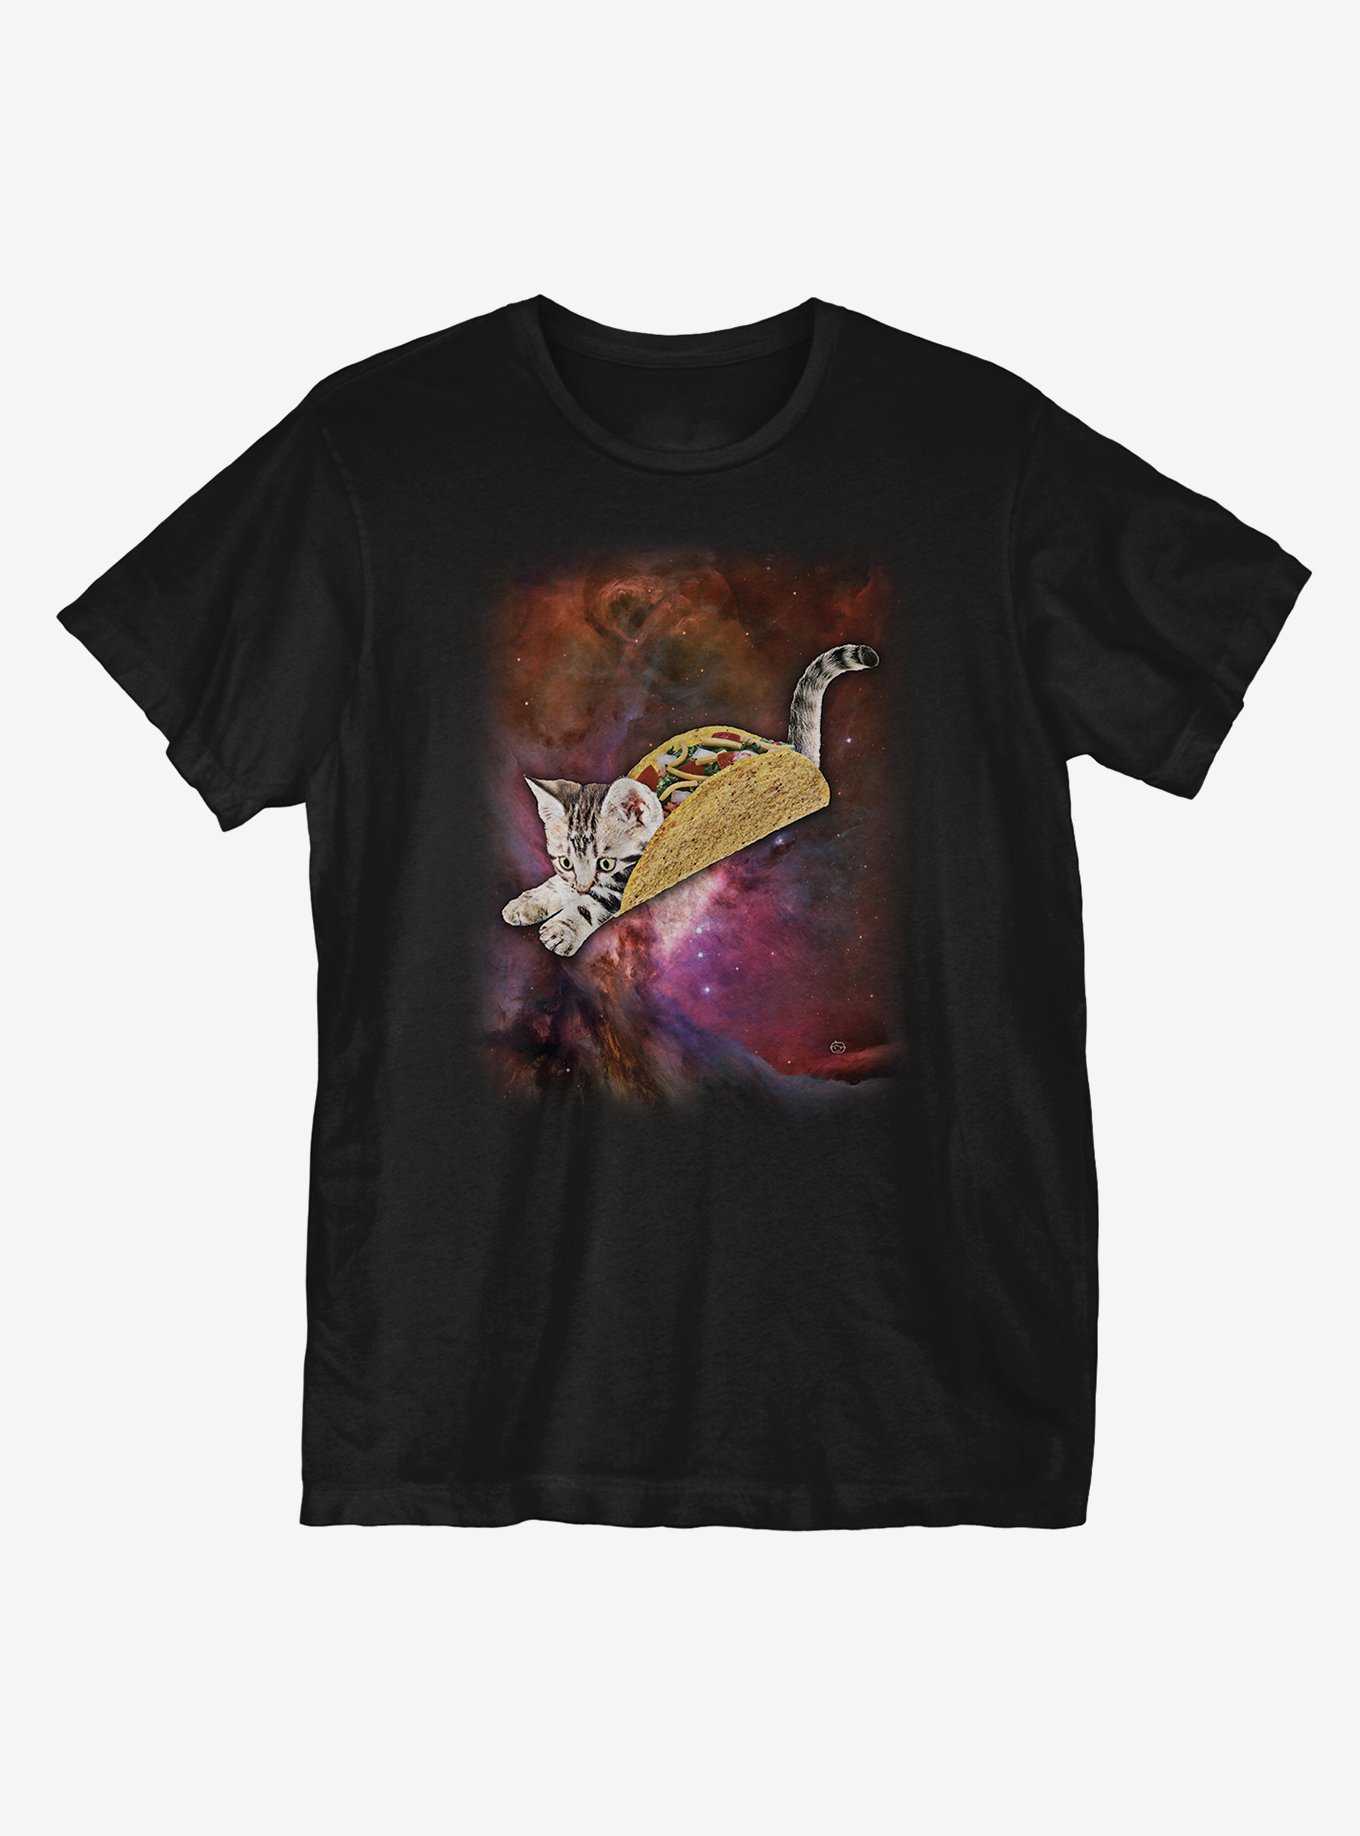 Tacocat in Subspace T-Shirt, , hi-res